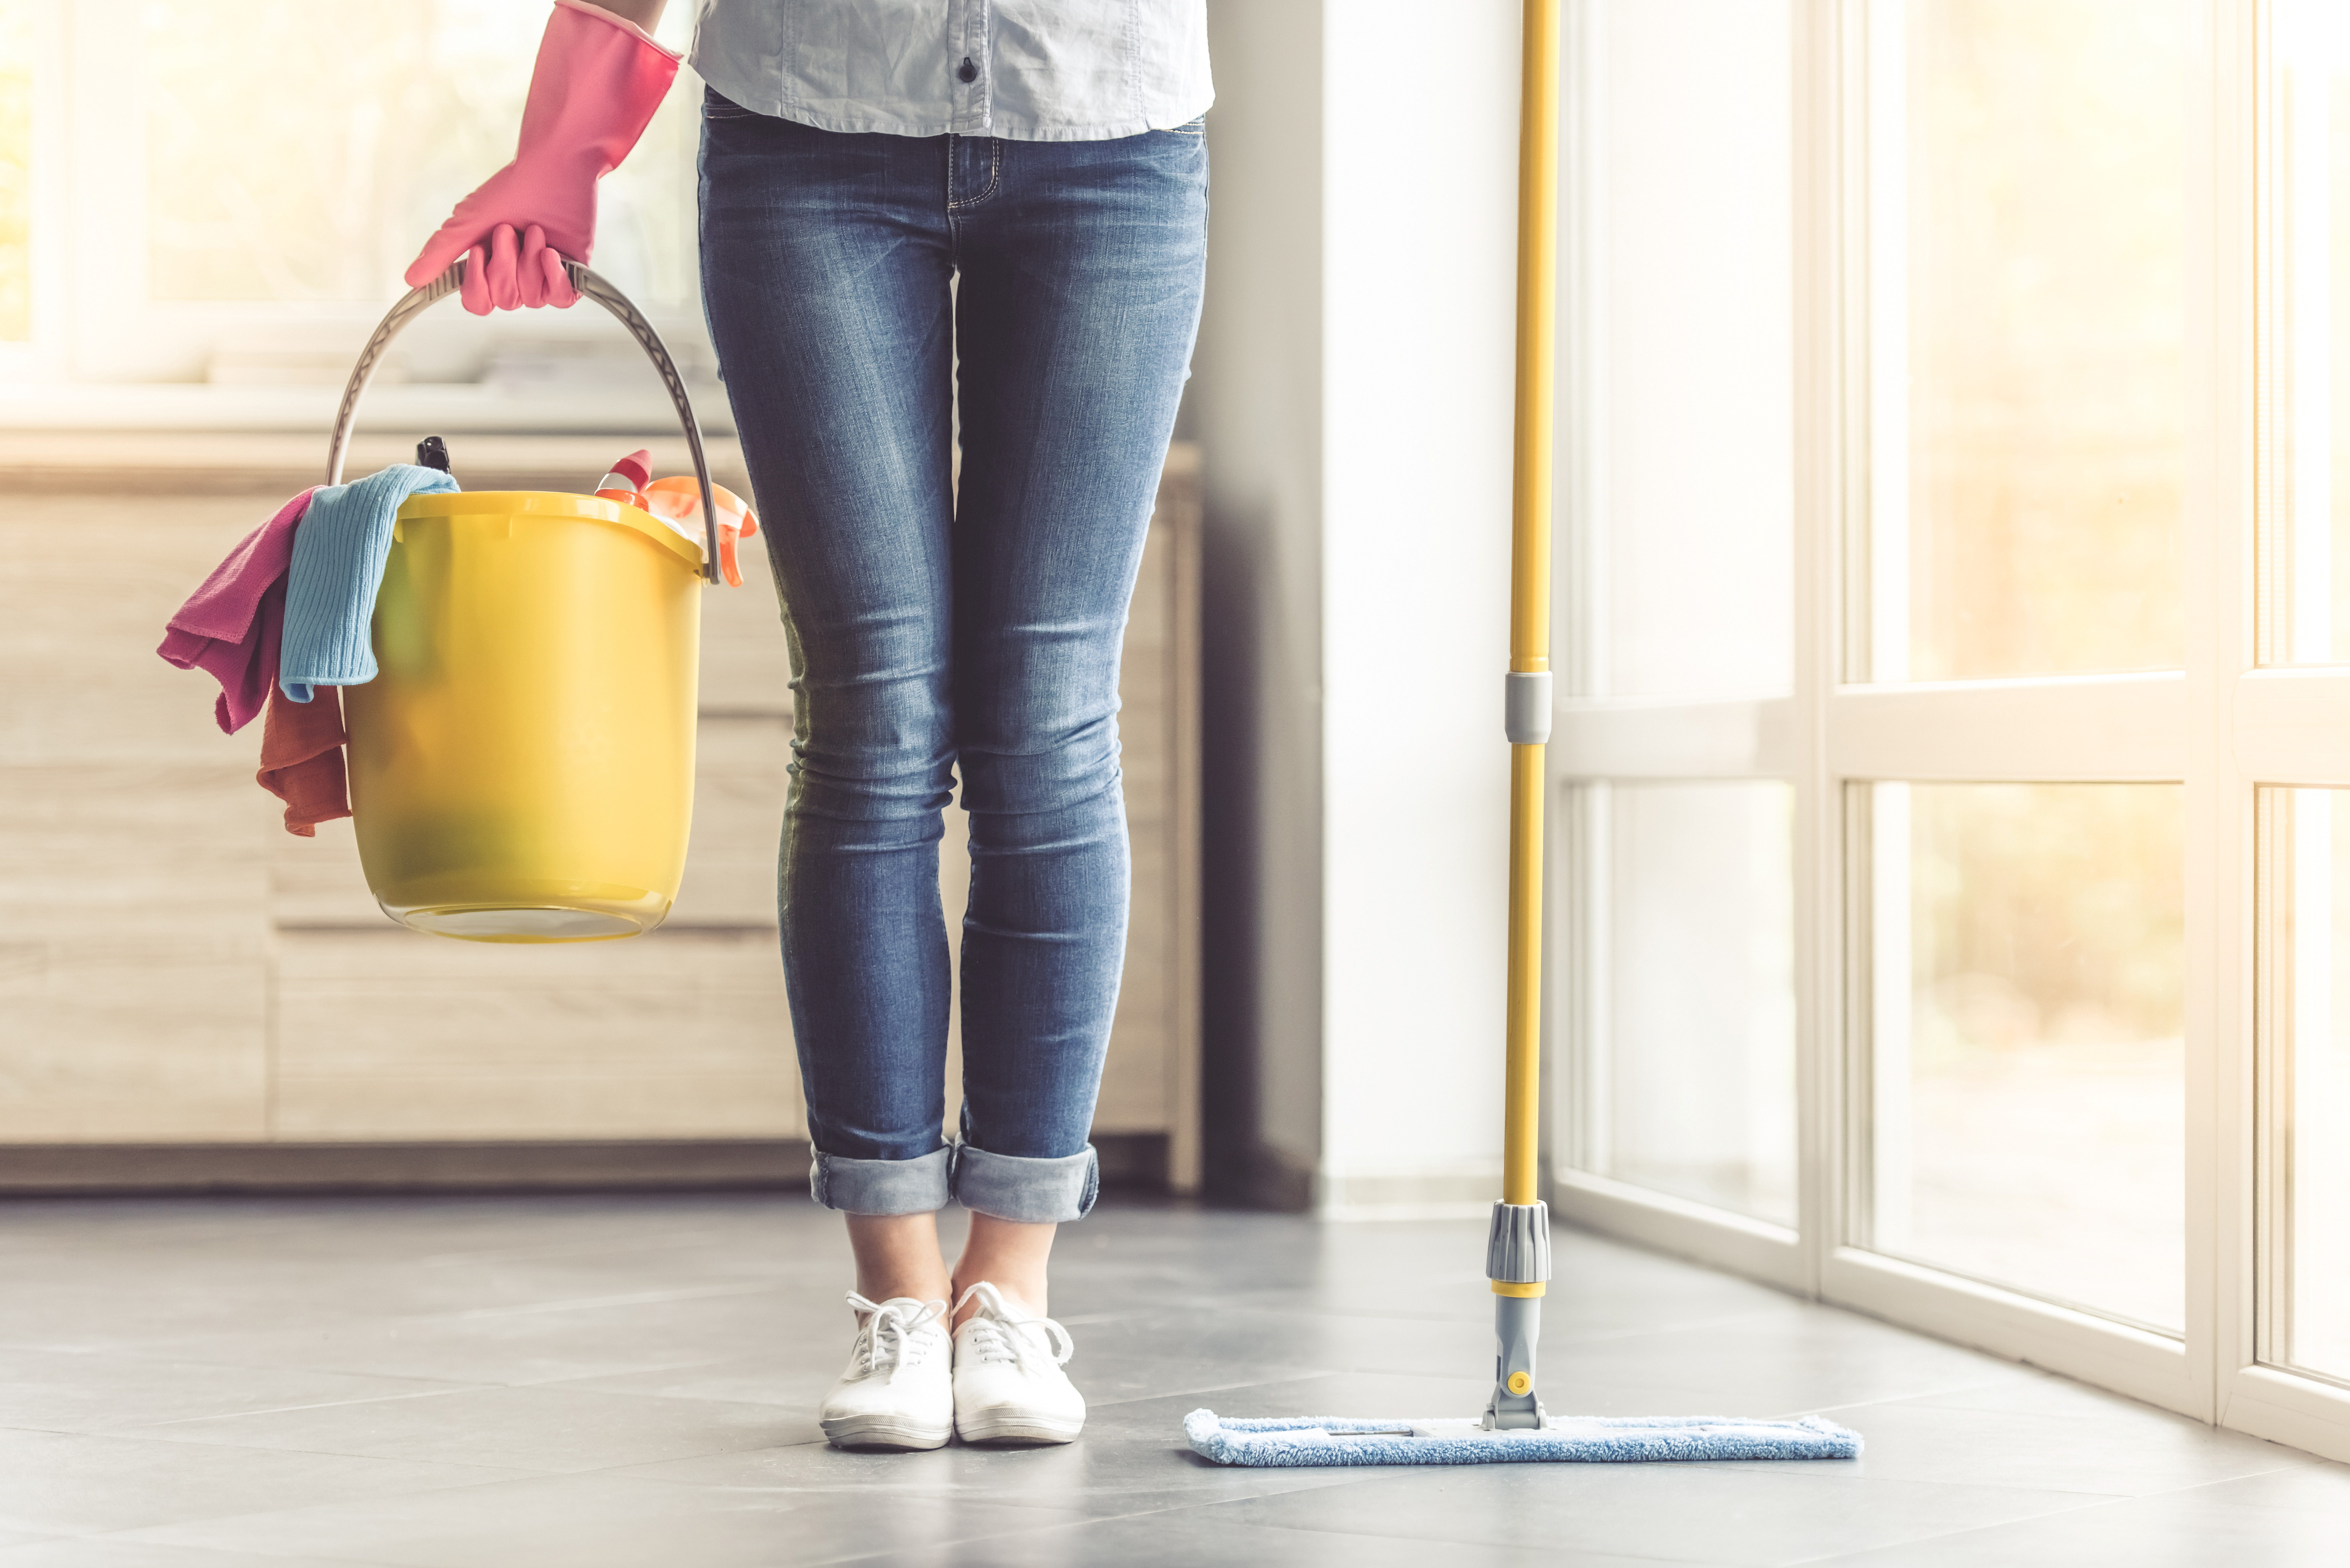 Vi mostriamo come pulire correttamente il vostro pavimento!